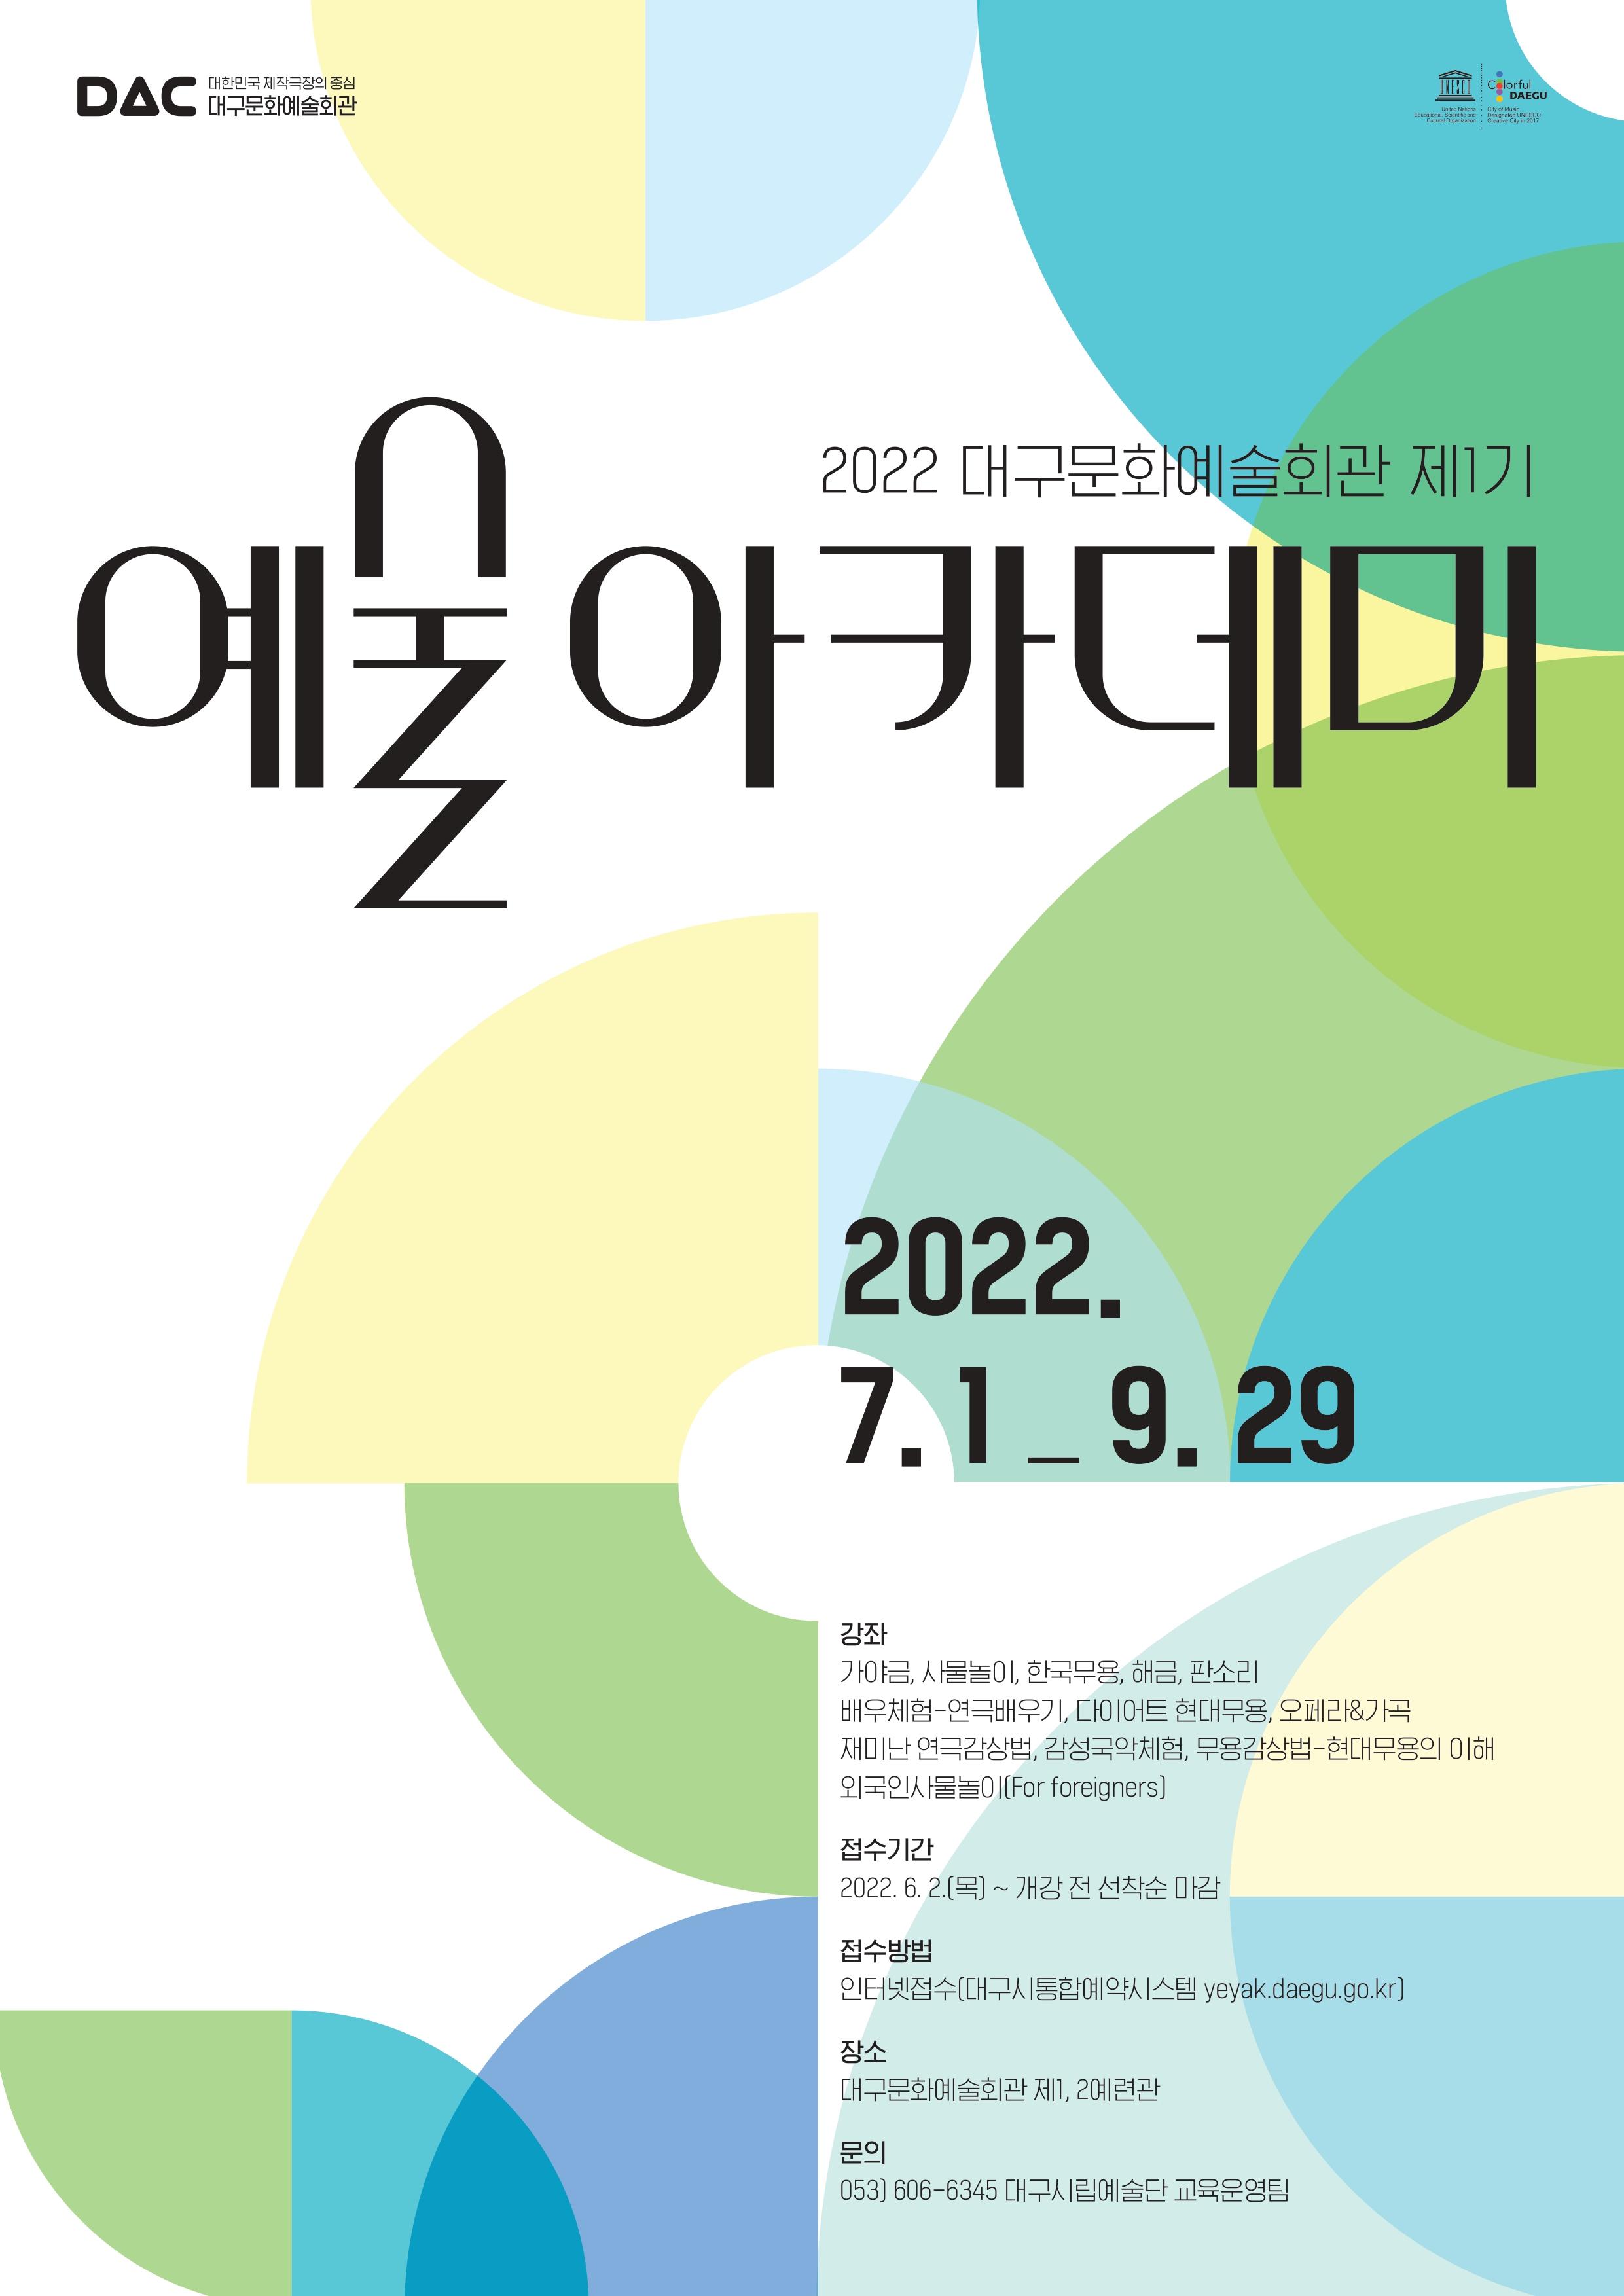 [대구문화예술회관] 2022 제 1기 예술아카데미 수강생 모집 (무료강좌) 1